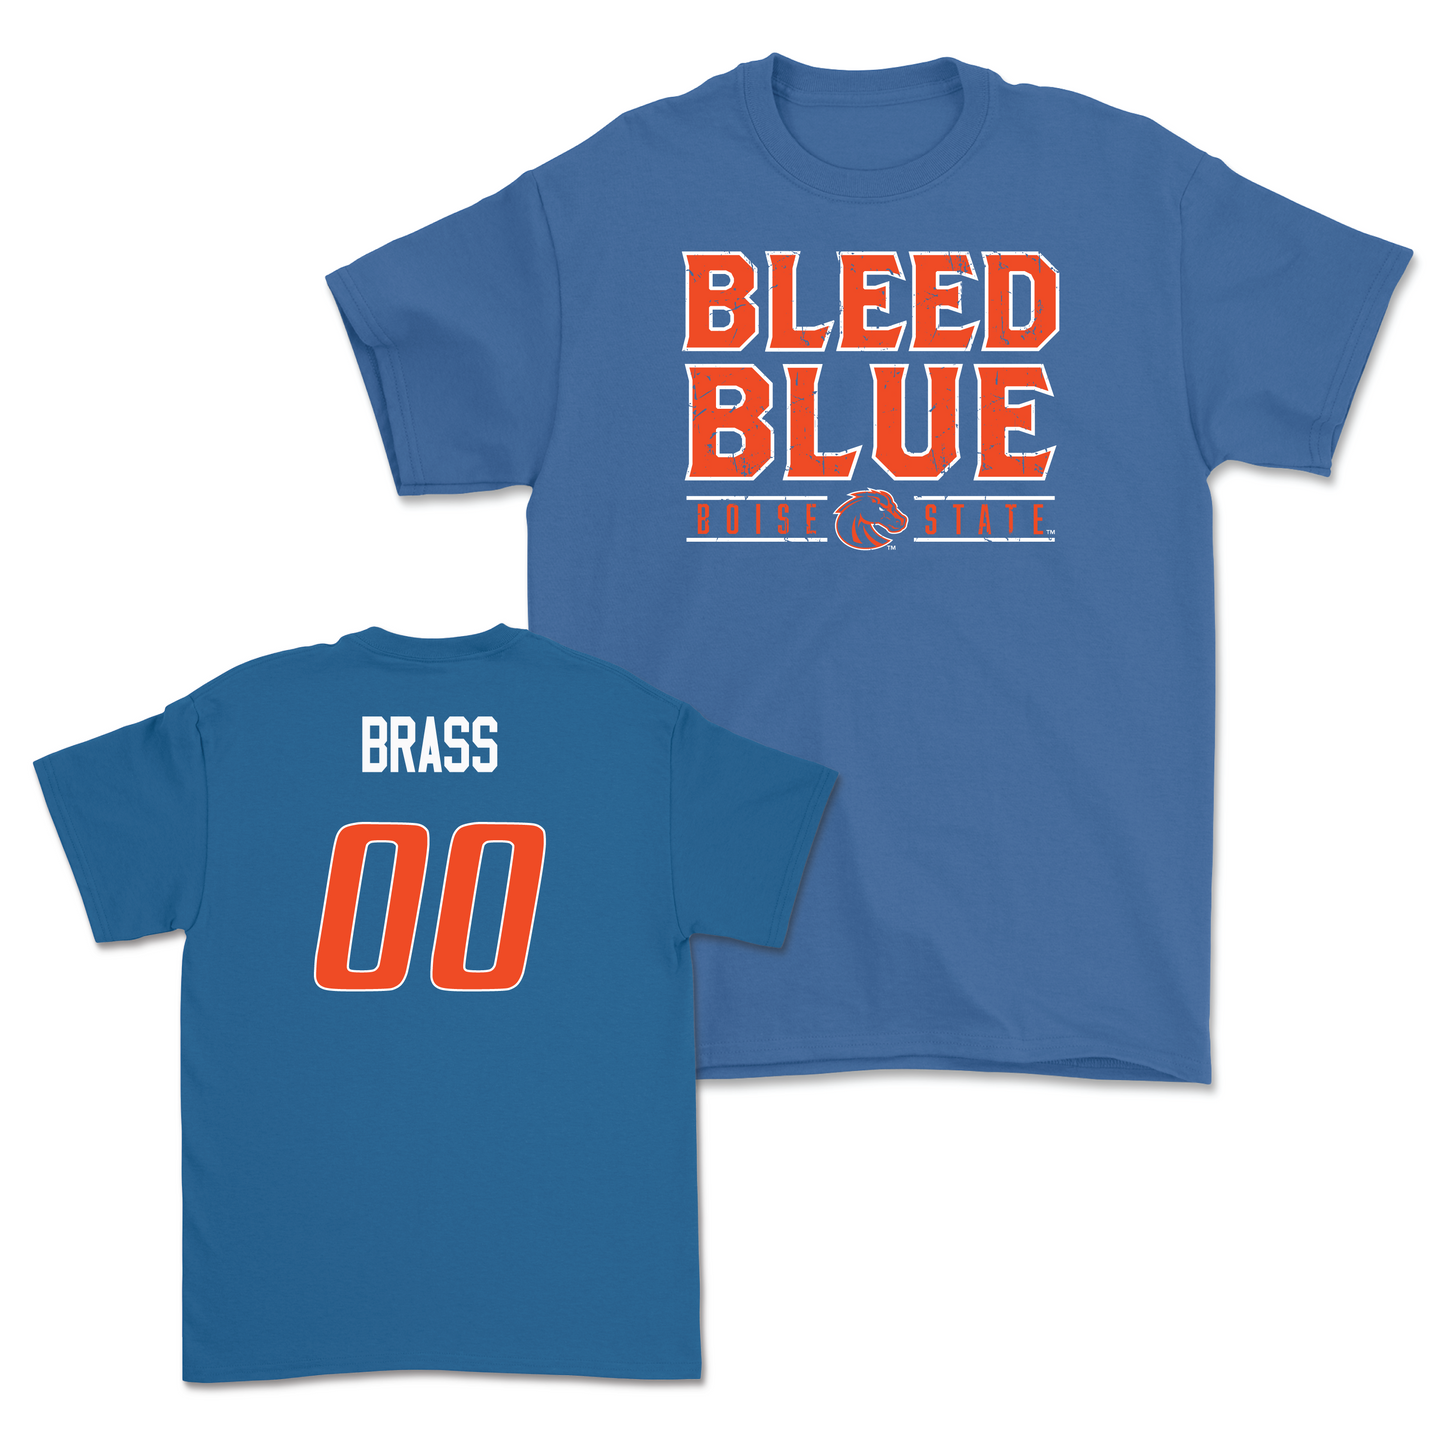 Boise State Women's Soccer Blue "Bleed Blue" Tee - Jazmyn Brass